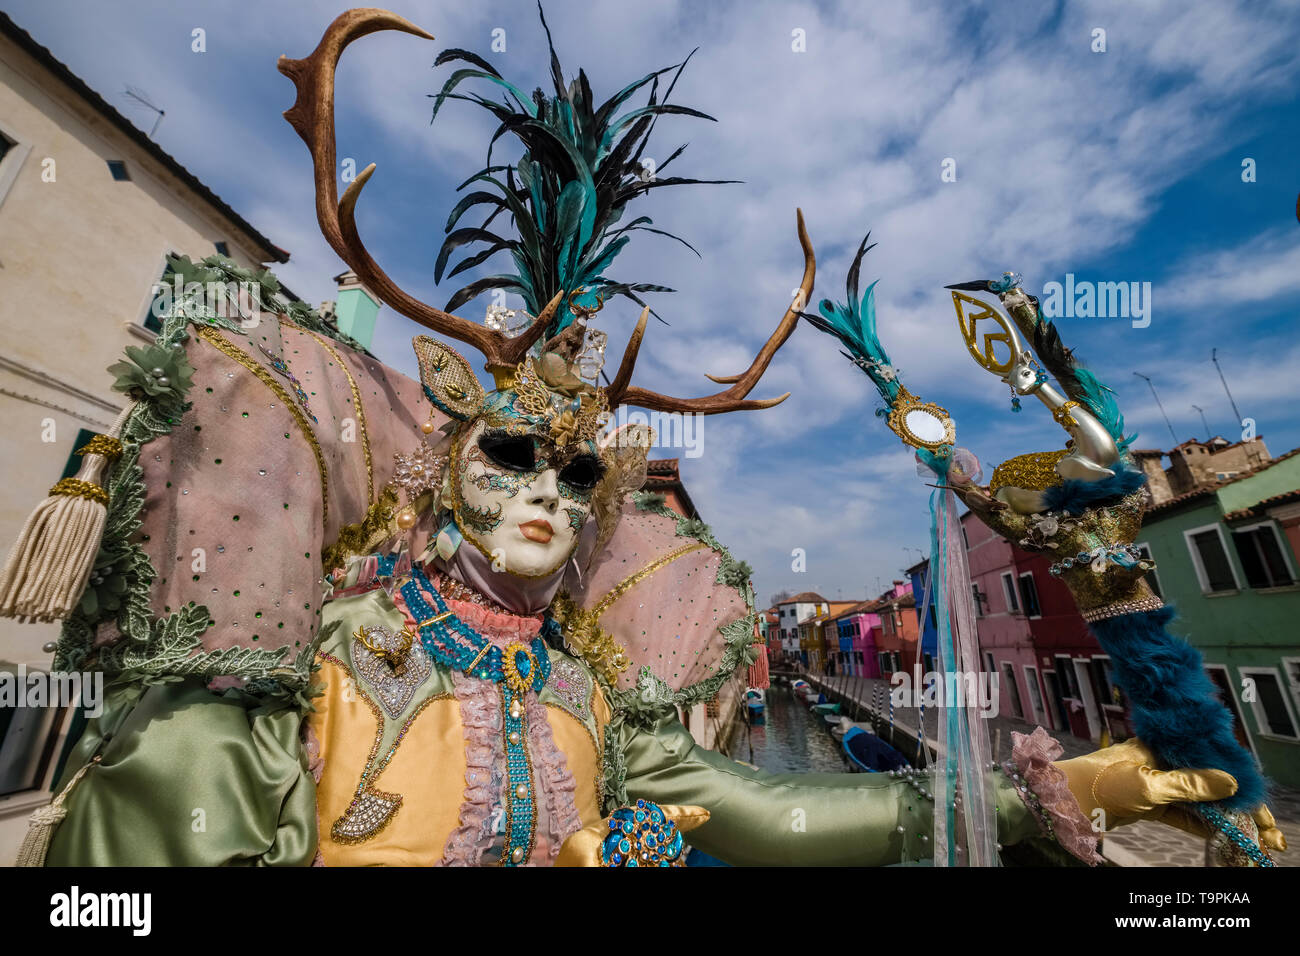 Eine feminine maskierte Person in einem schönen kreativen Kostüm, auf der Insel Burano posiert, feiert die Venezianischen Karneval Stockfoto